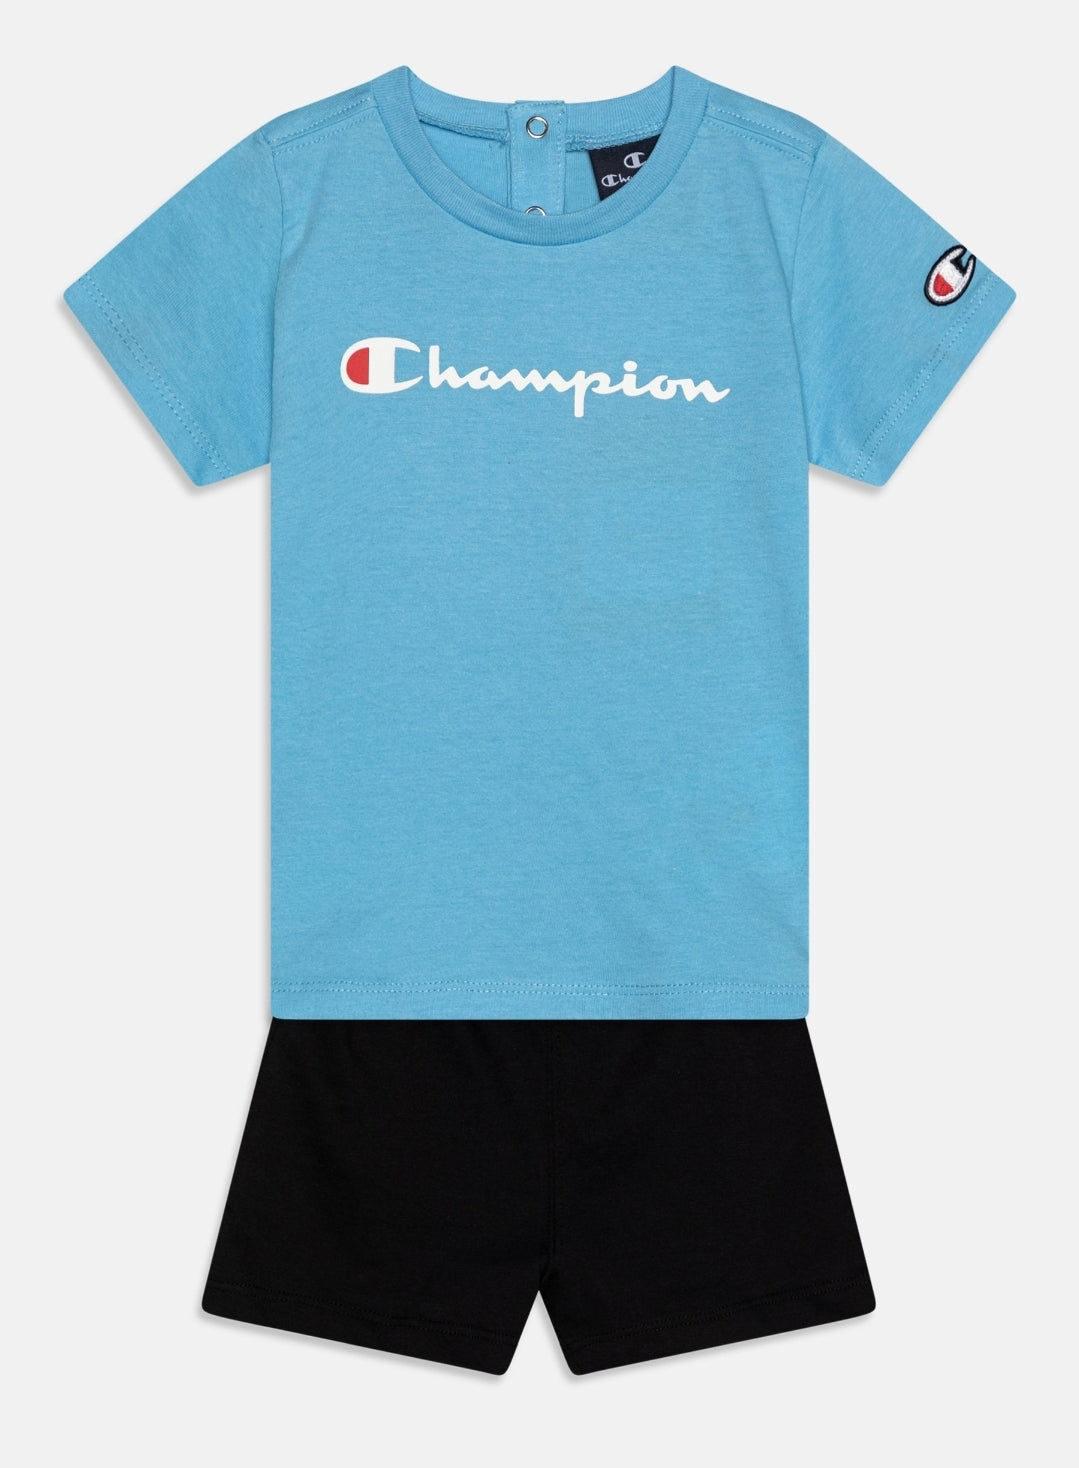 Camiseta de bebê campeão e shorts e shorts turquesa